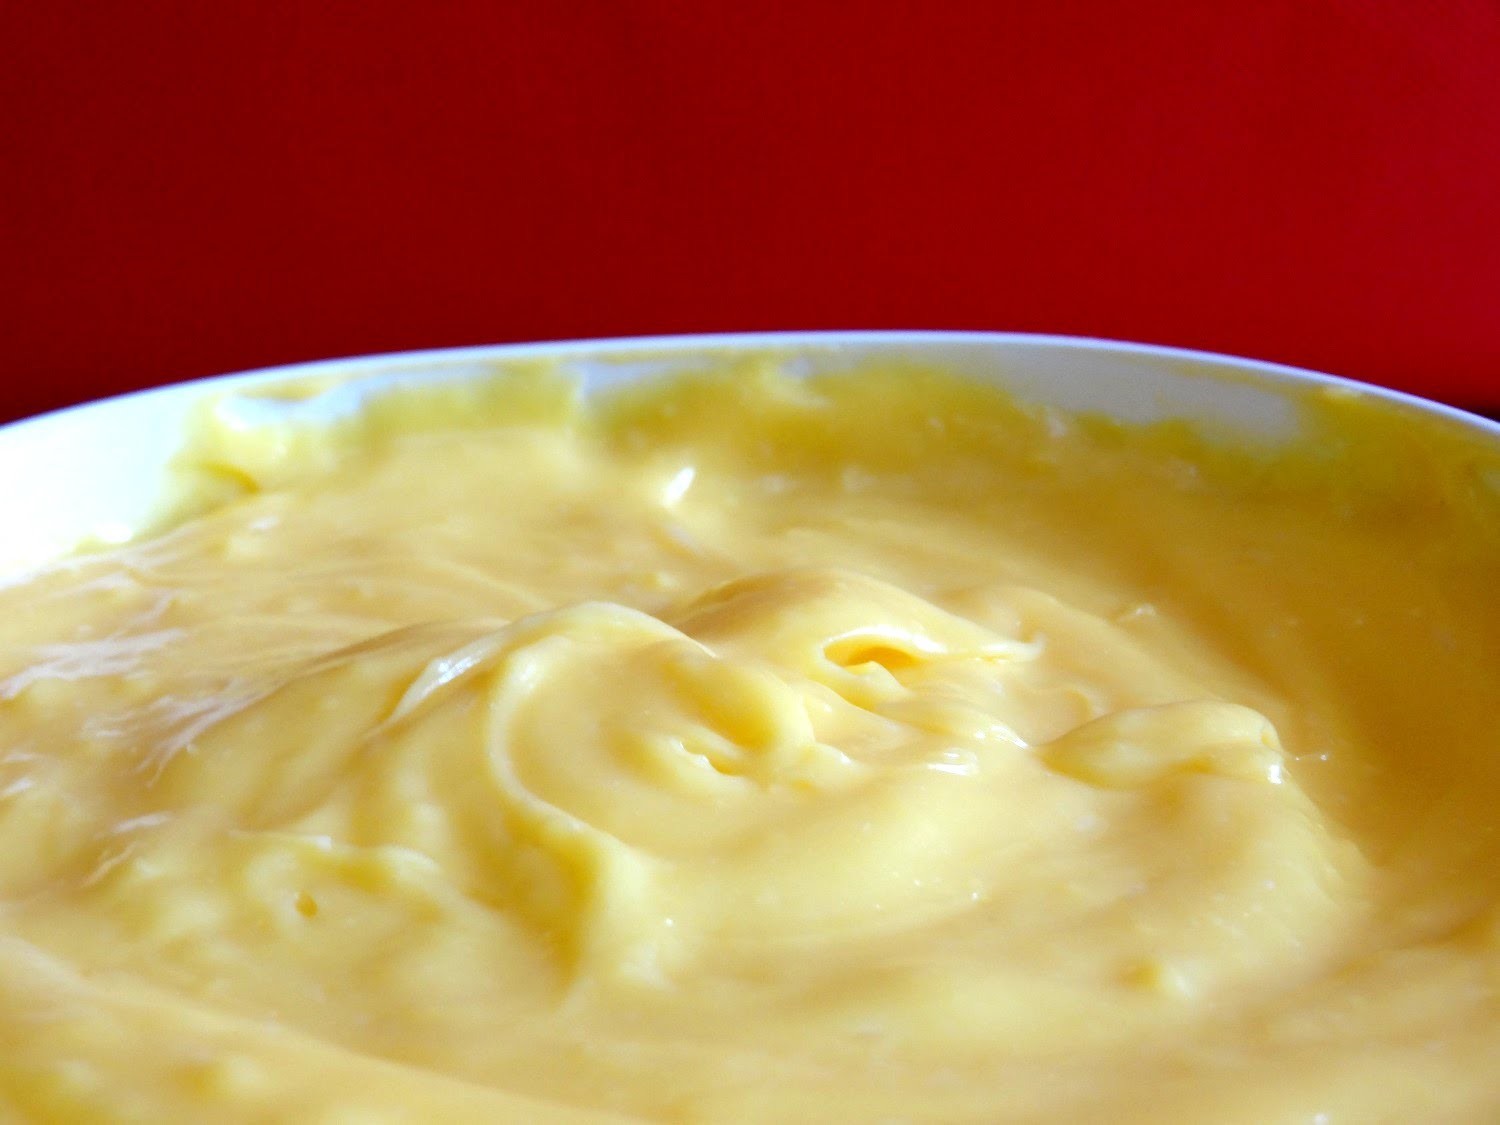 Receta: Crema pastelera (Crème pâtissière) -- Clásica -- Vídeo receta (Paso a paso)